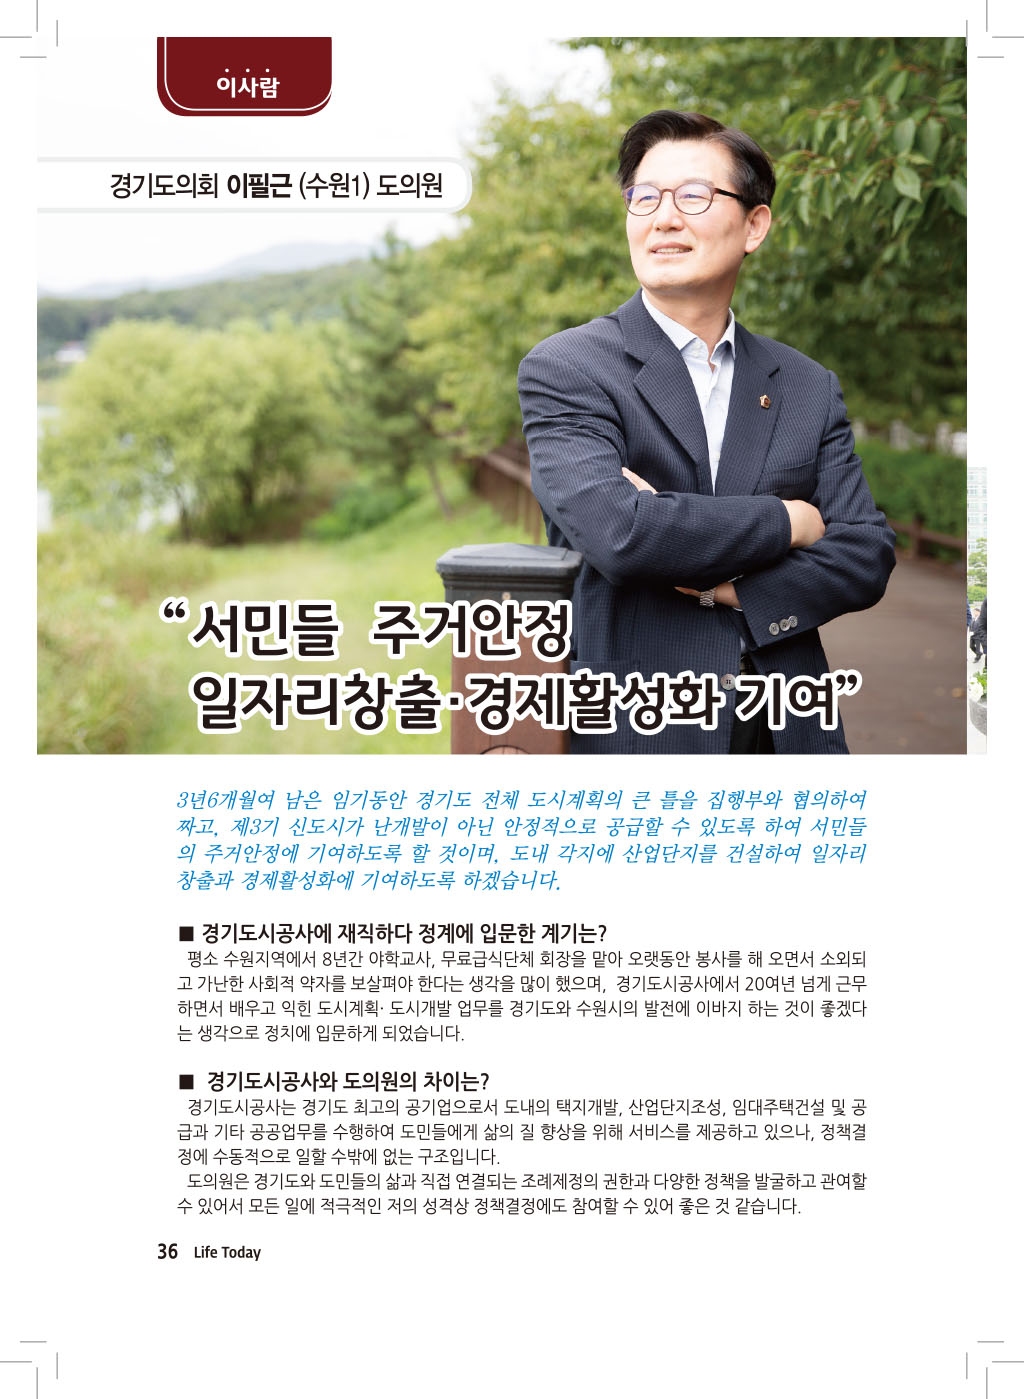 이사람-경기도의회 이필근 도의원 (19년 3월)